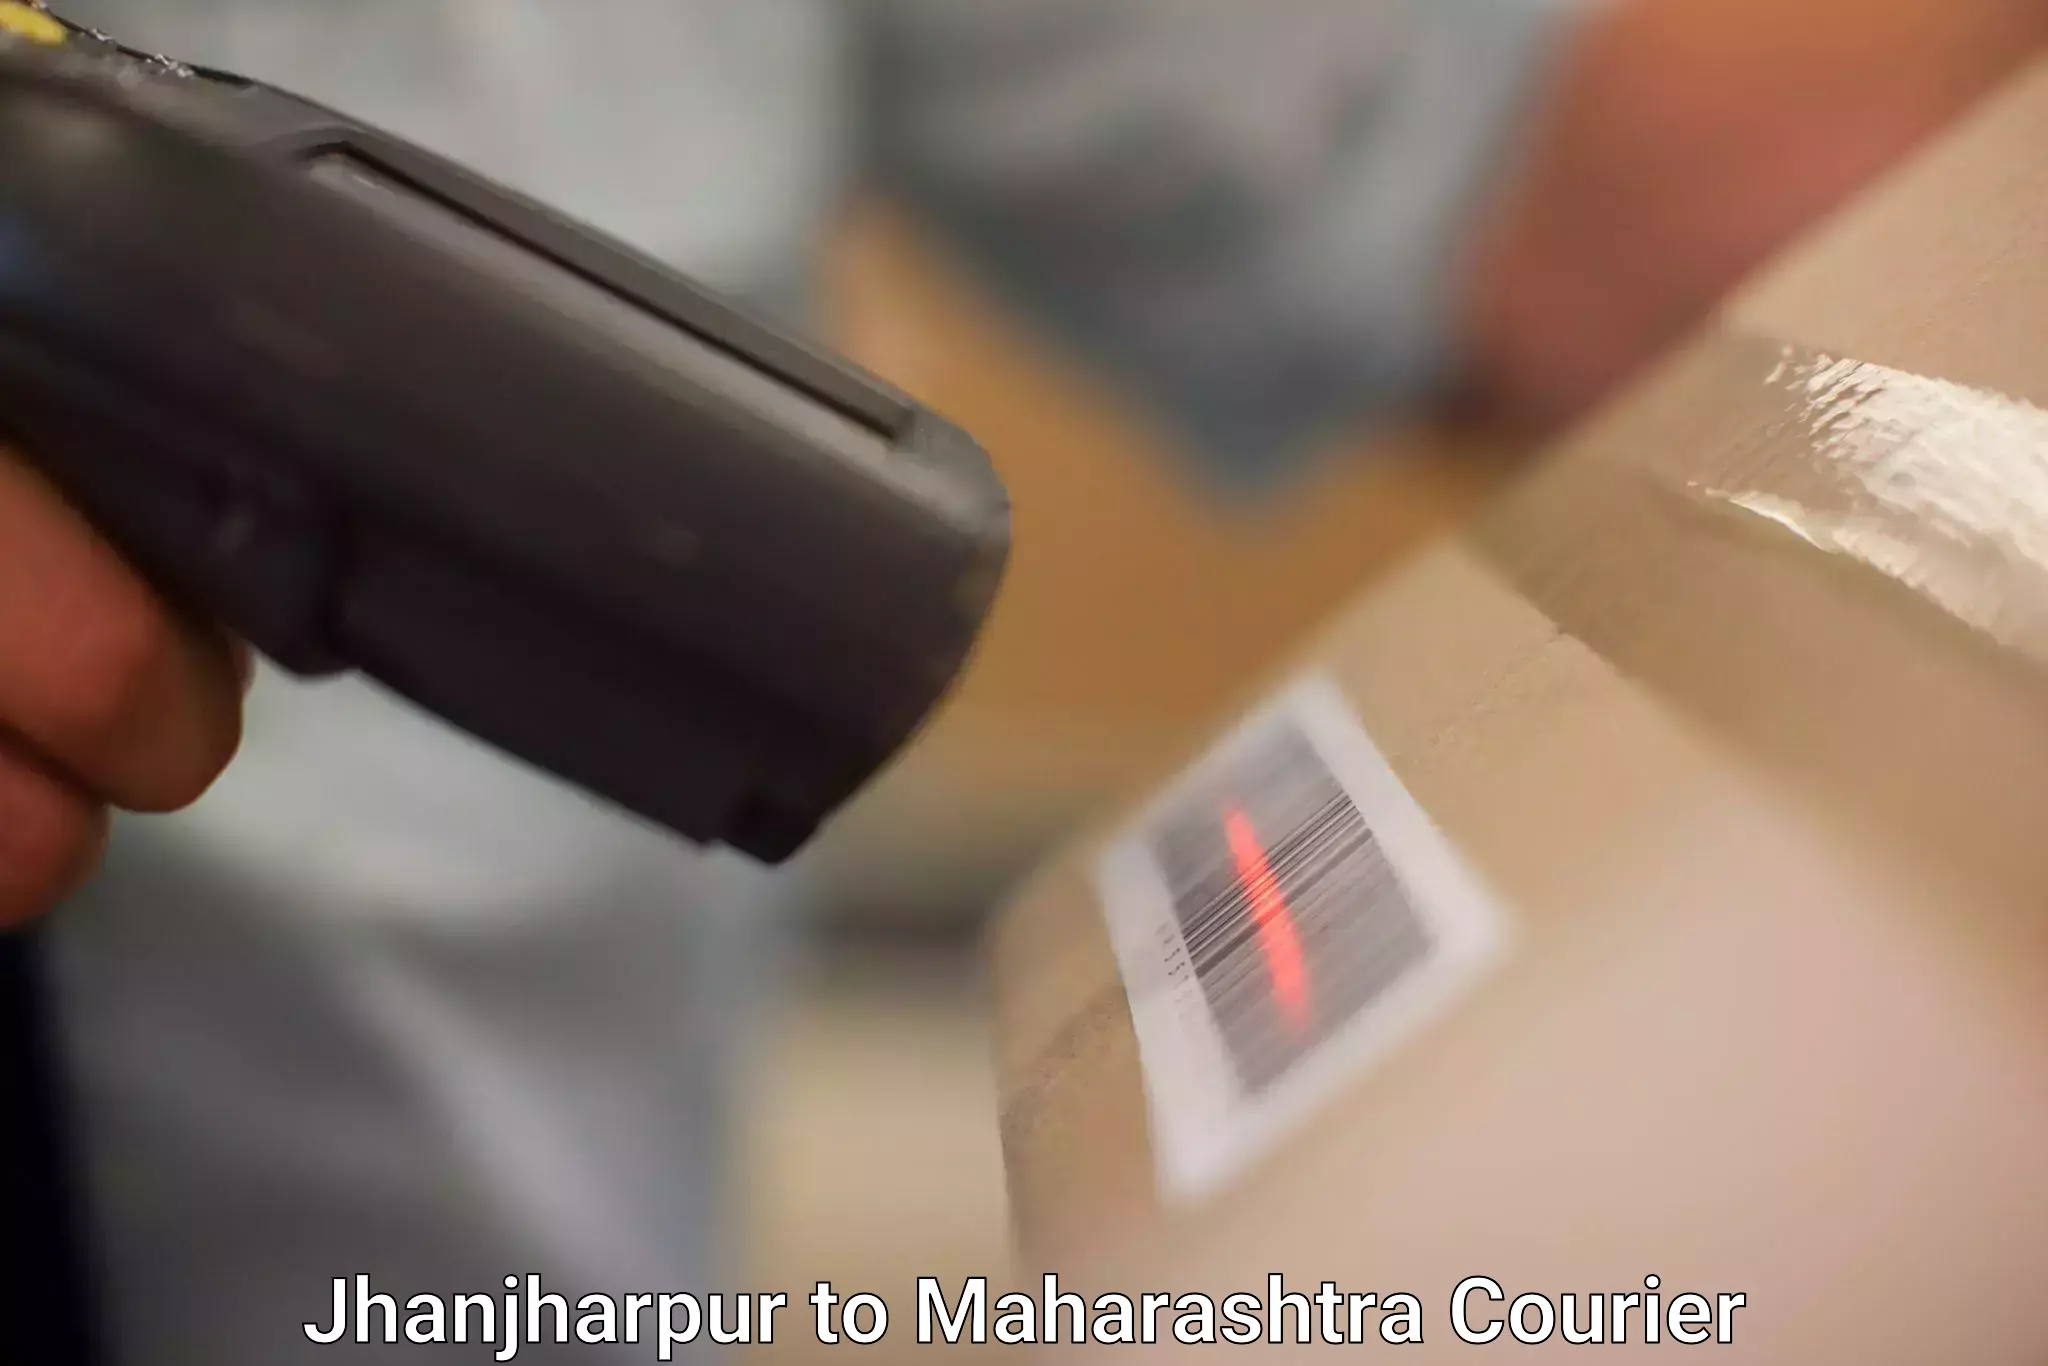 Local delivery service Jhanjharpur to Maharashtra